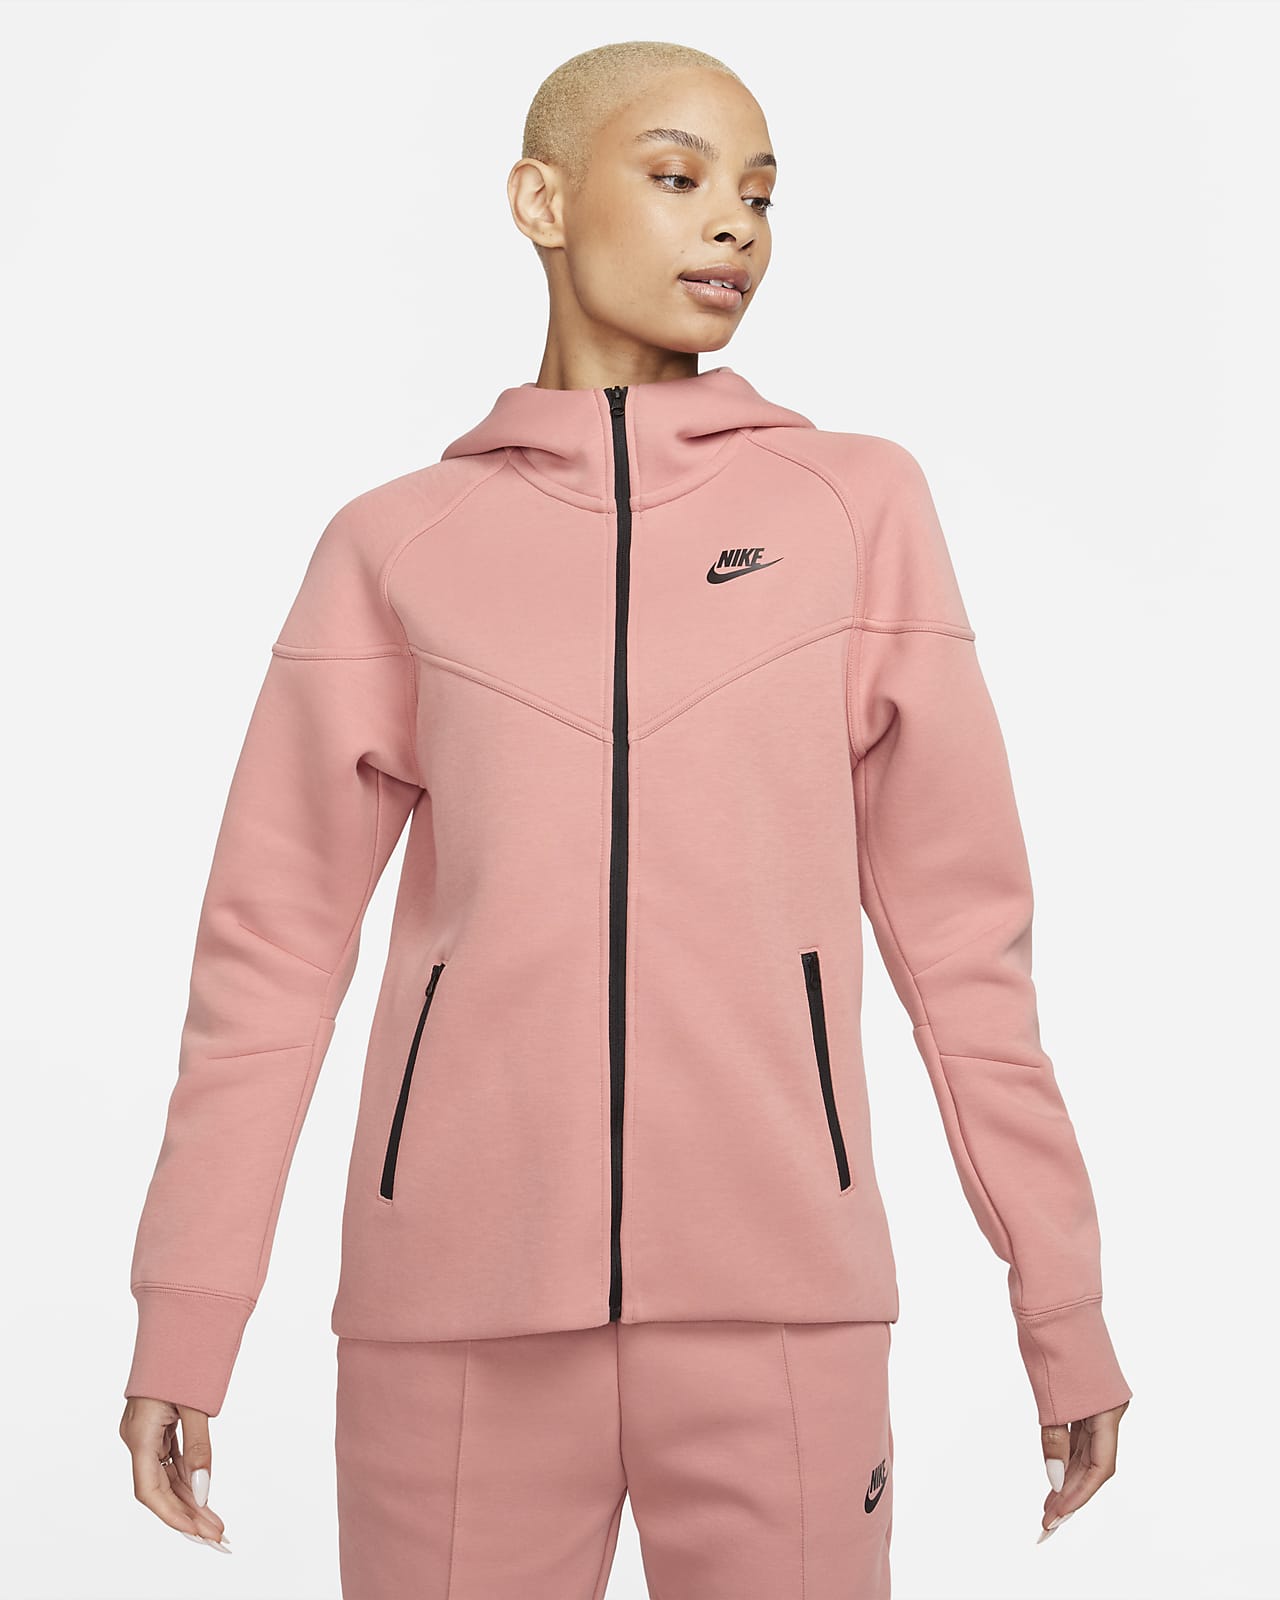 bevestig alstublieft Christchurch Waardeloos Nike Sportswear Tech Fleece Windrunner Hoodie met rits voor dames. Nike BE